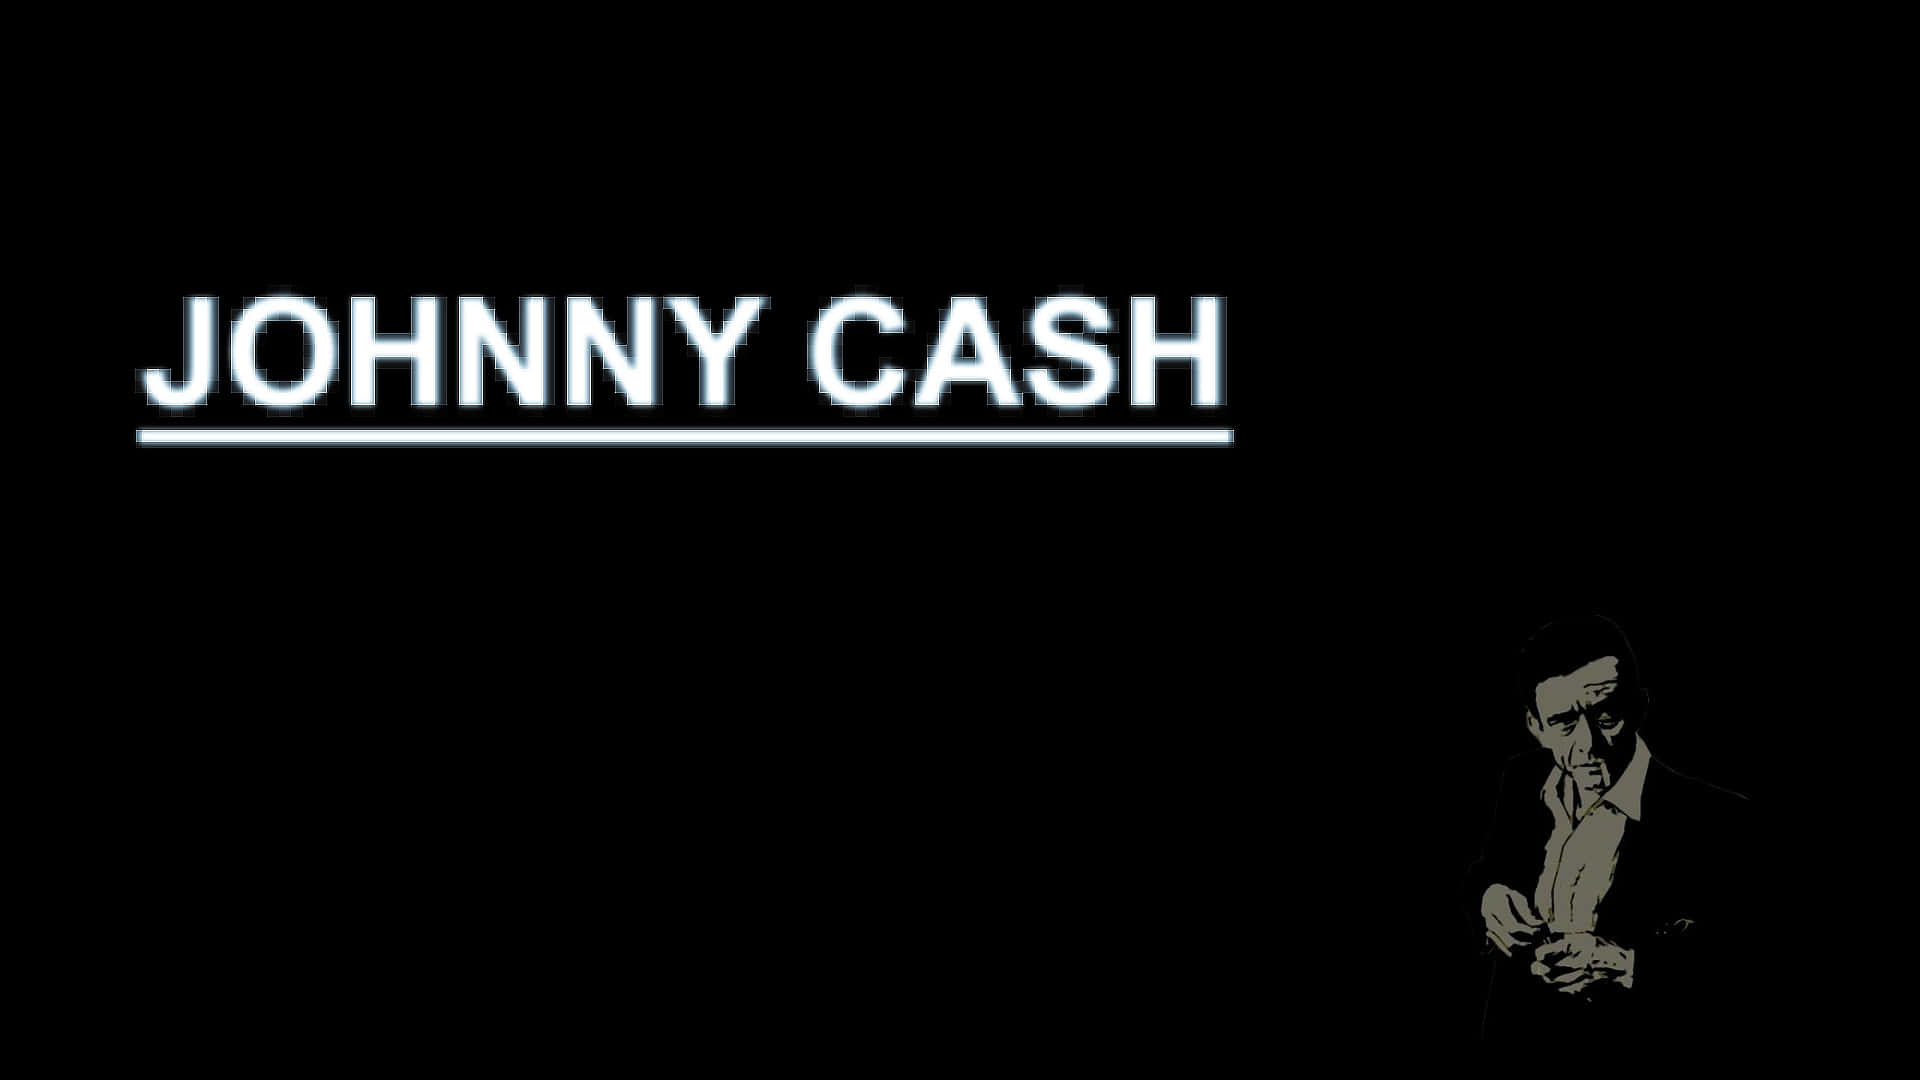 Singing legend, Johnny Cash